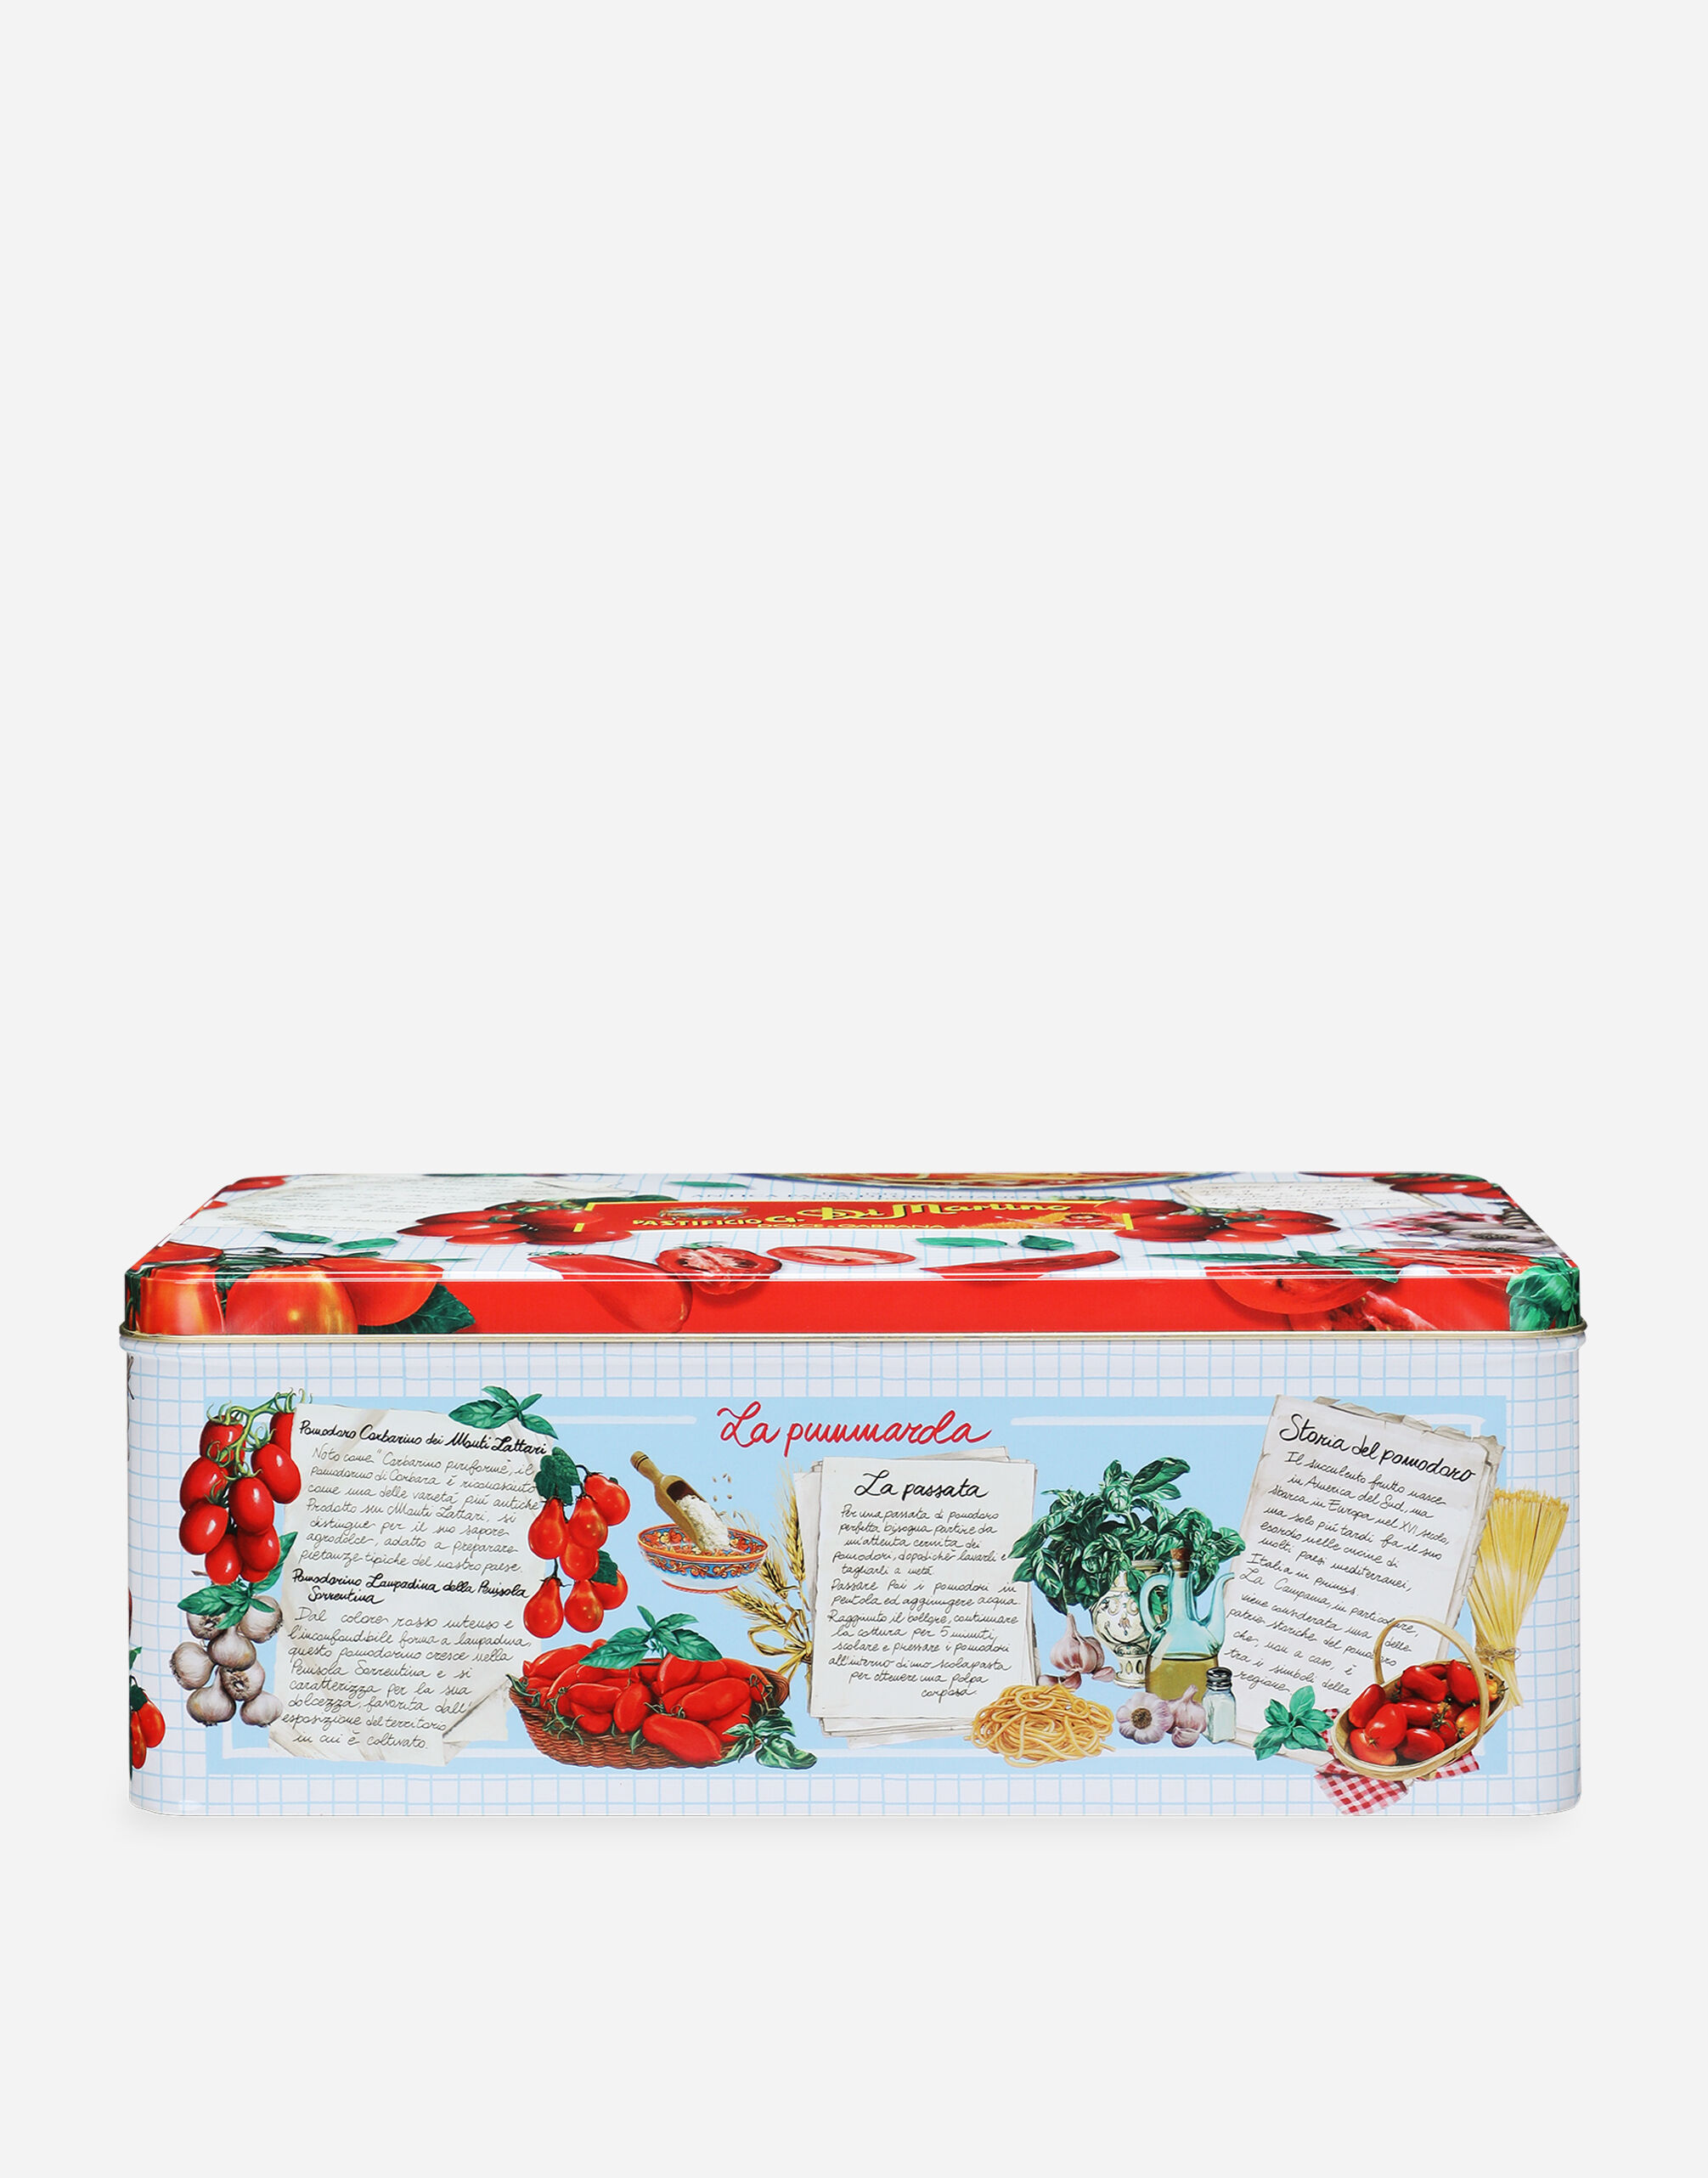 Dolce & Gabbana La Pummarola - Caja regalo compuesta por 5 paquetes de pasta de Gragnano IGP, 2 latas de tomates Corbarino y un delantal Dolce&Gabbana Multicolor PS7010PSSET